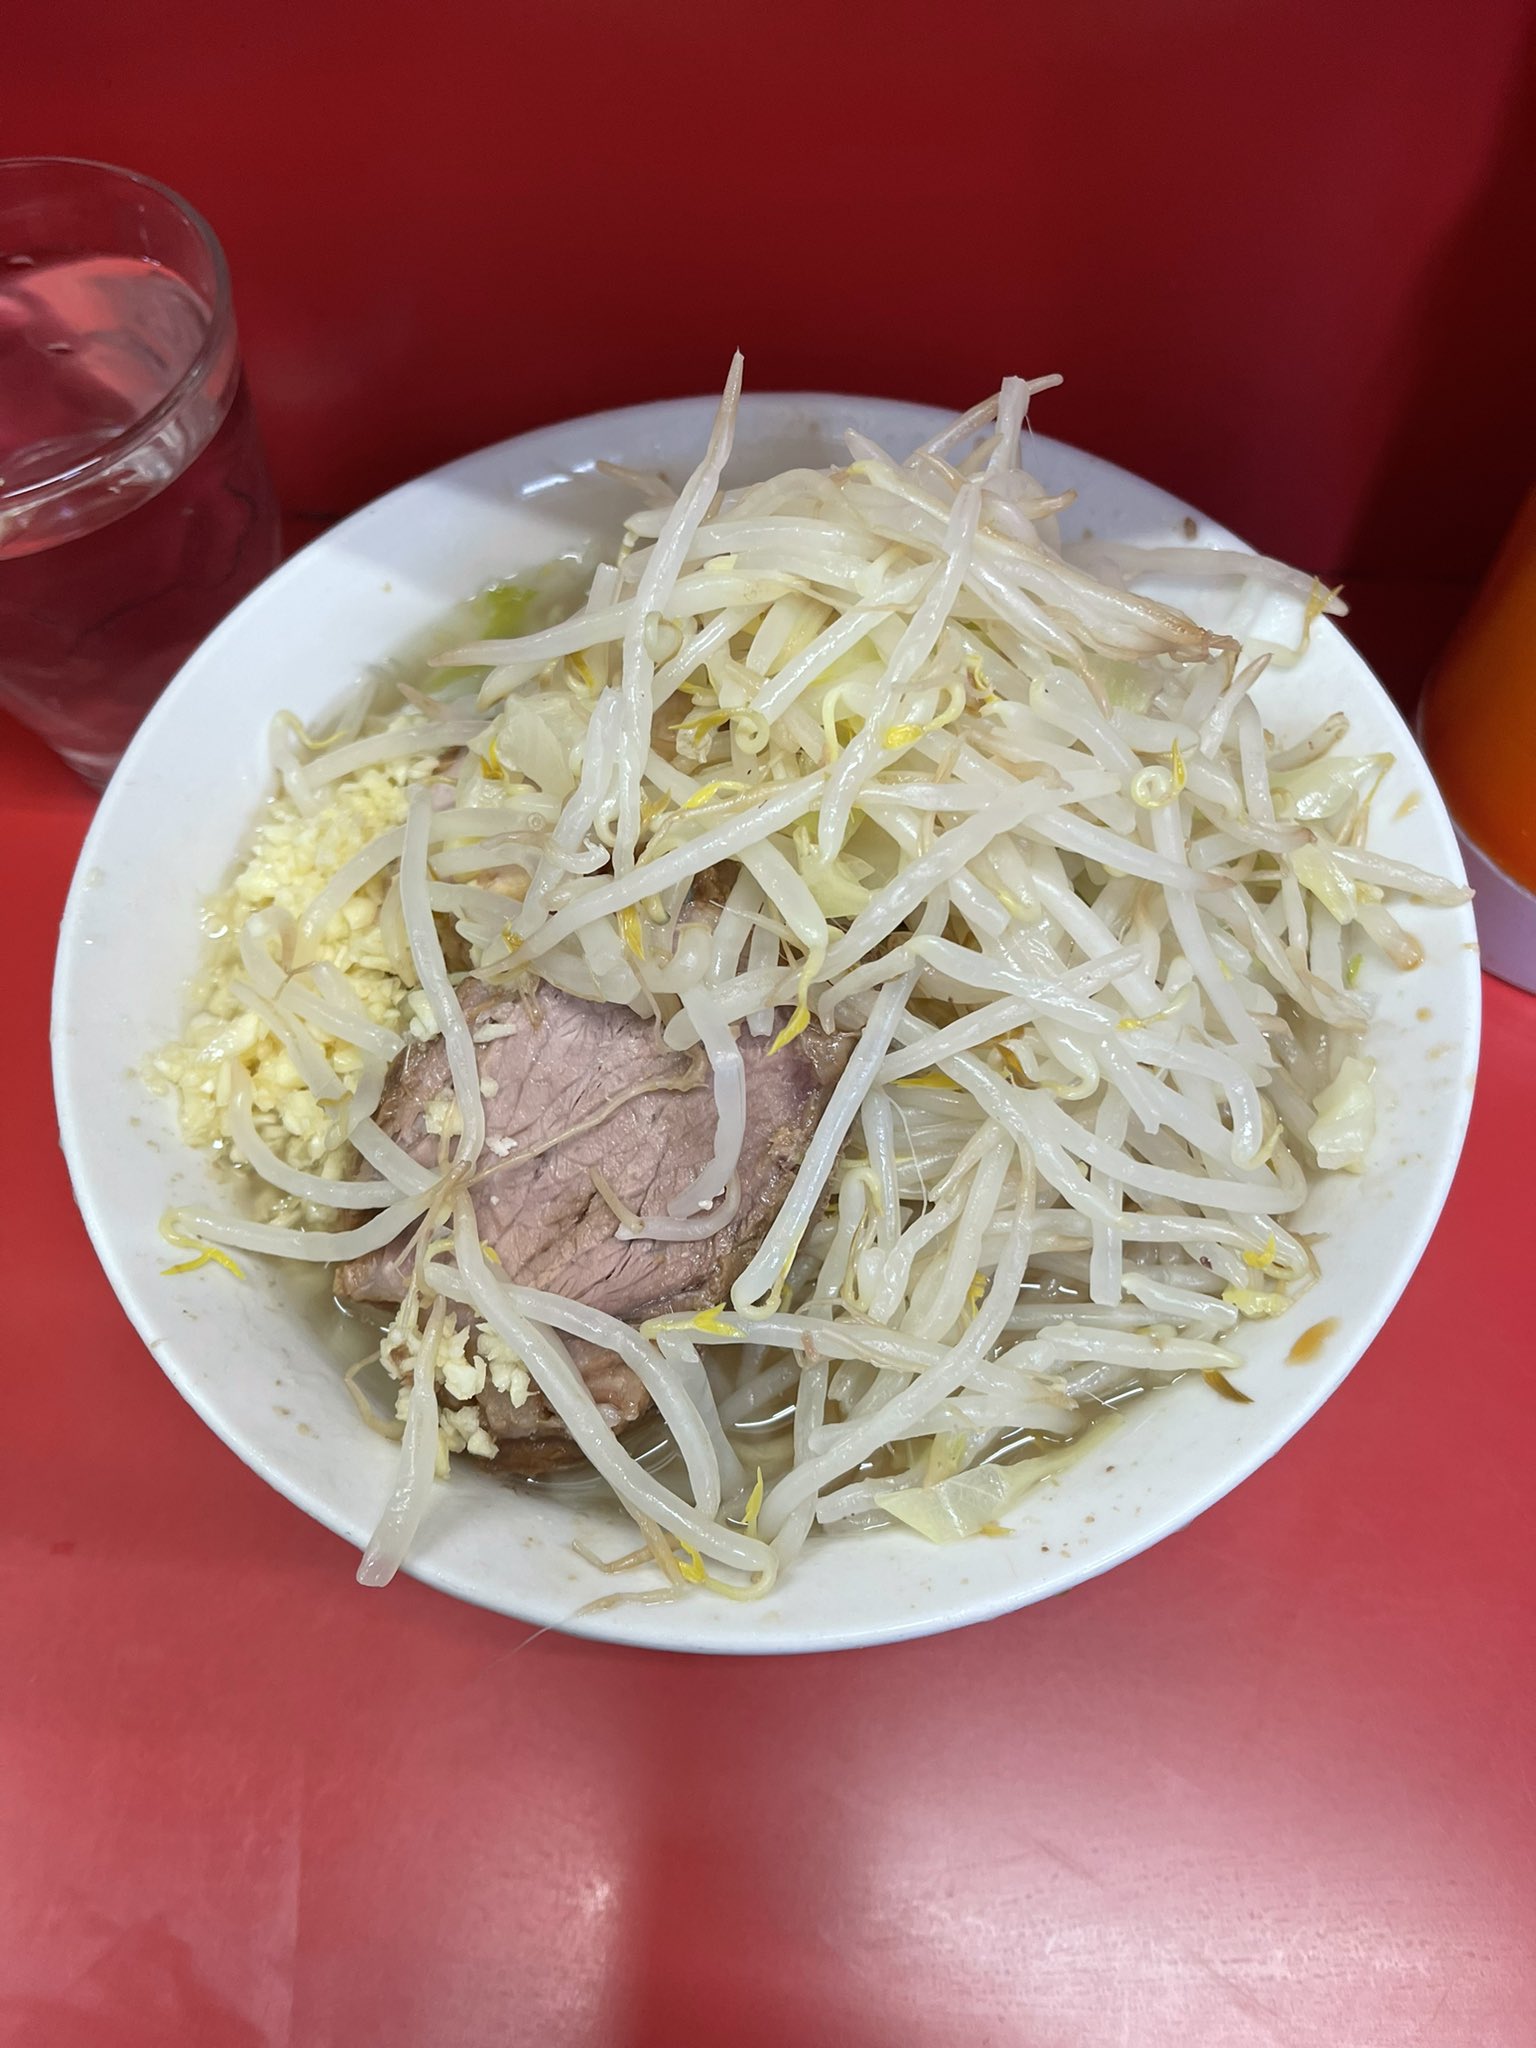 Kojiro 三田二郎で実験 ヤサイマシせず ニンニクで だけコール モヤシが少ないので 普通のラーメンの様に食っていける 何よりスープを啜りながら食べれる ラーメンはスープだと思ってるので 野菜 麺と交互に啜れていいリズム 二郎こそ